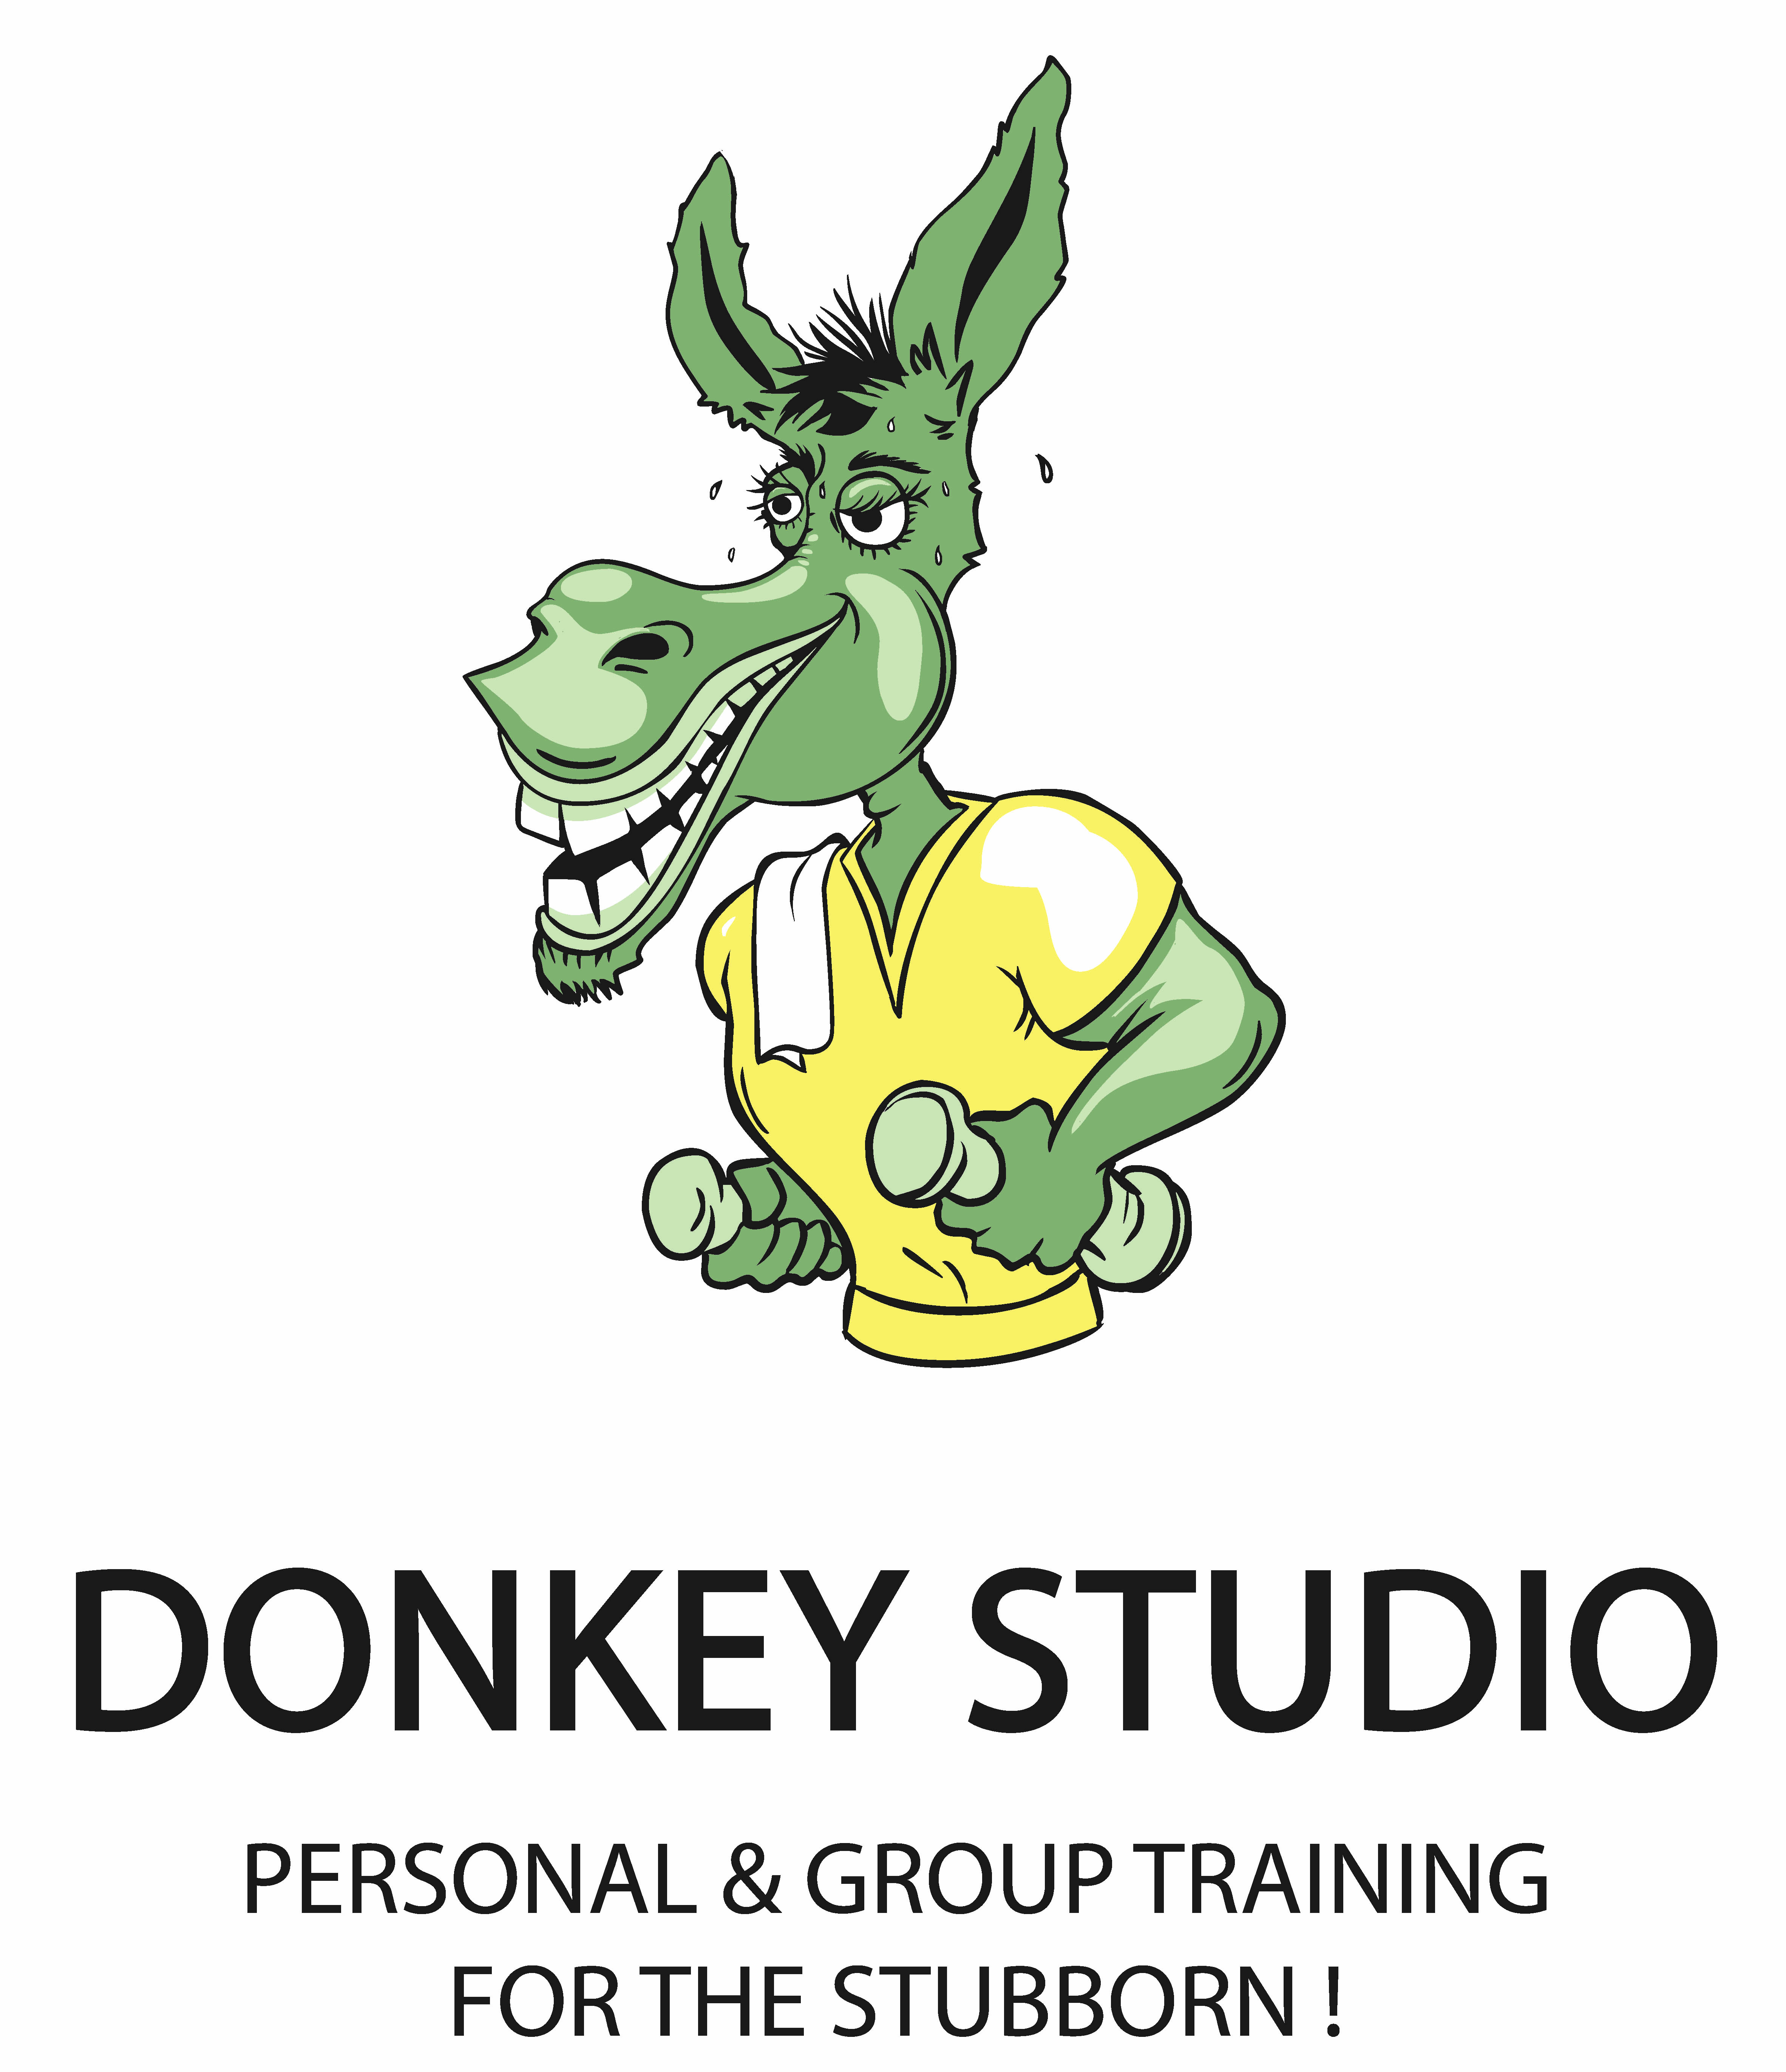 Dinkey Studio